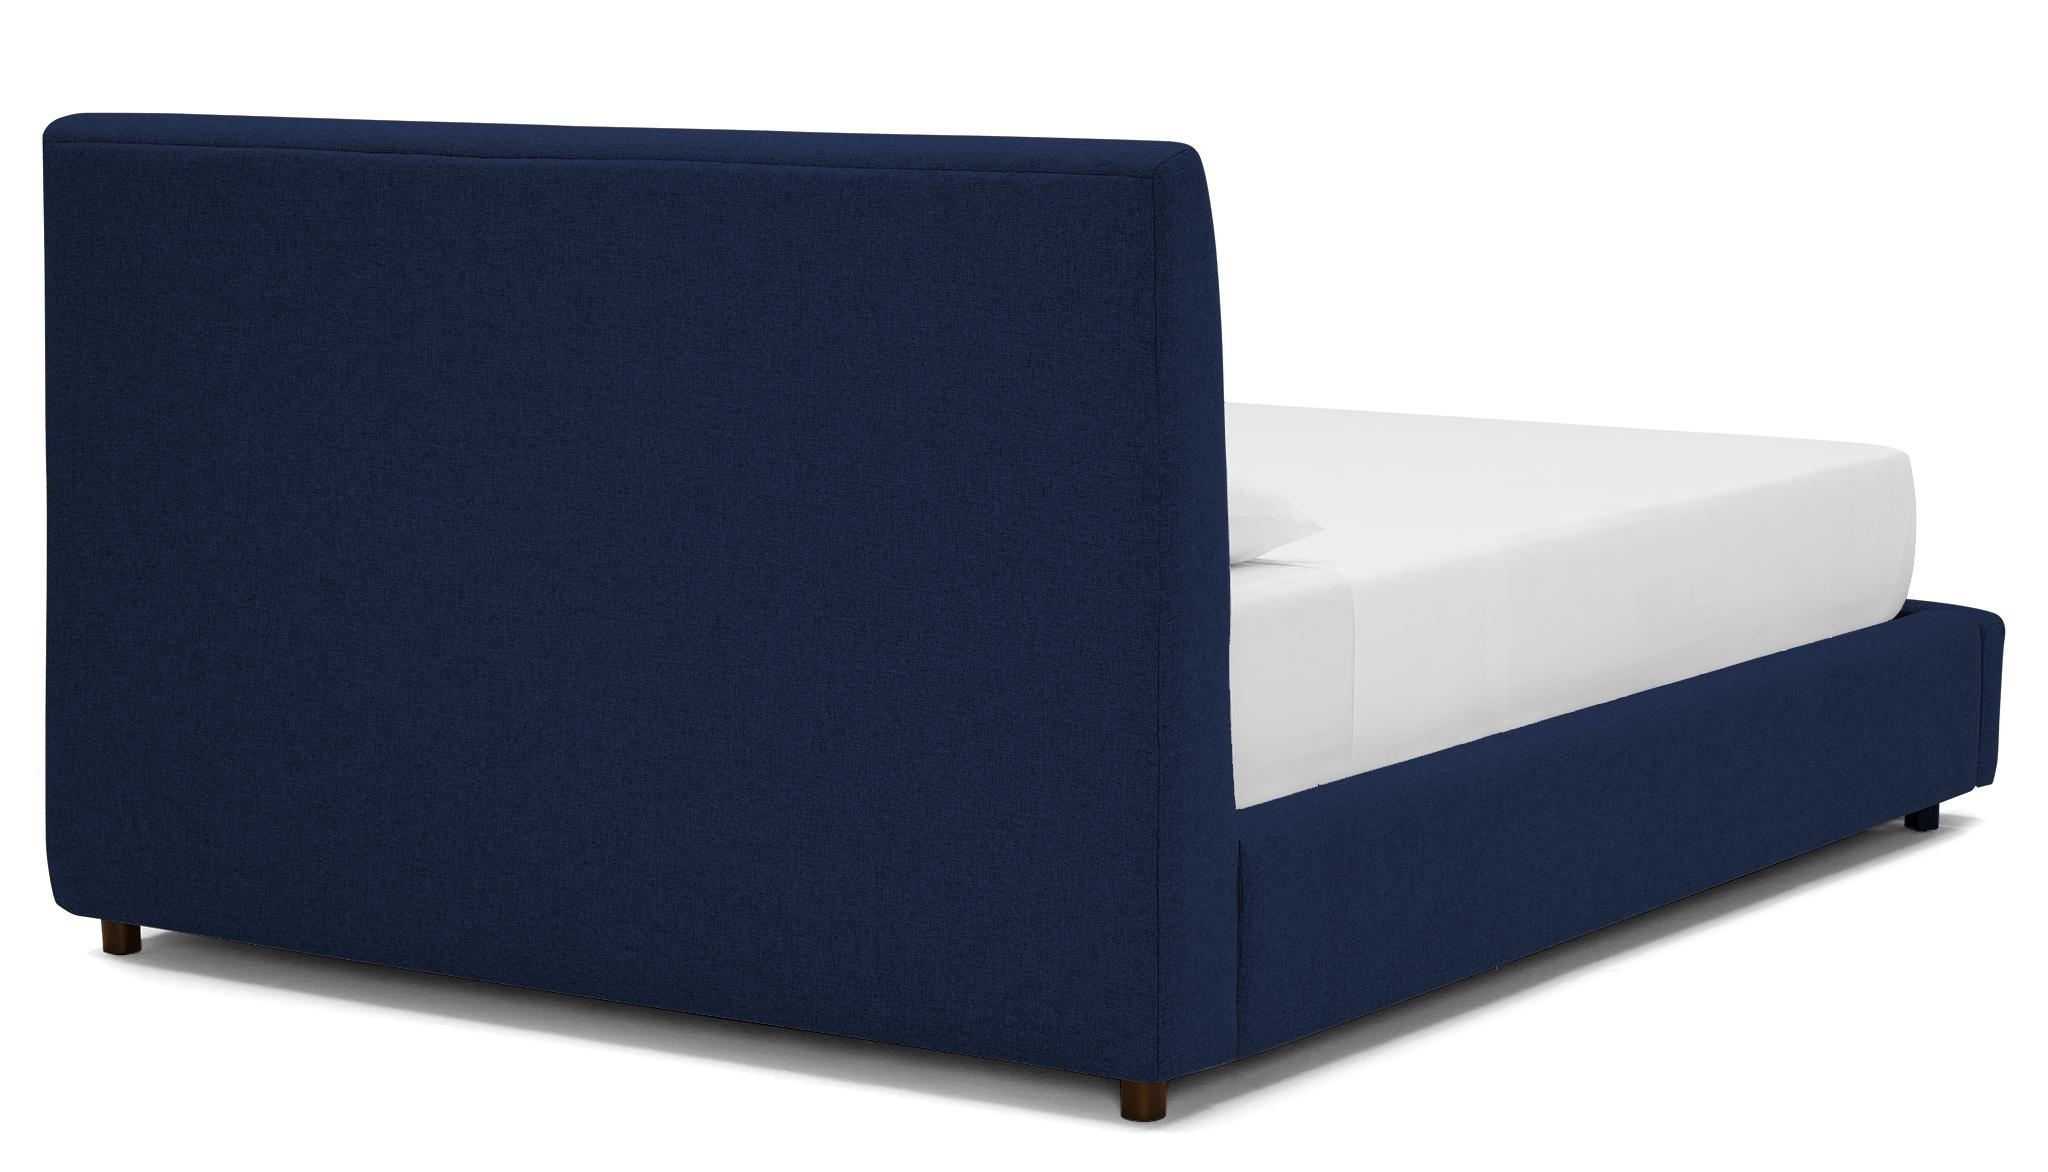 Blue Alvin Mid Century Modern Storage Bed - Royale Cobalt - Mocha - Eastern King - Image 3